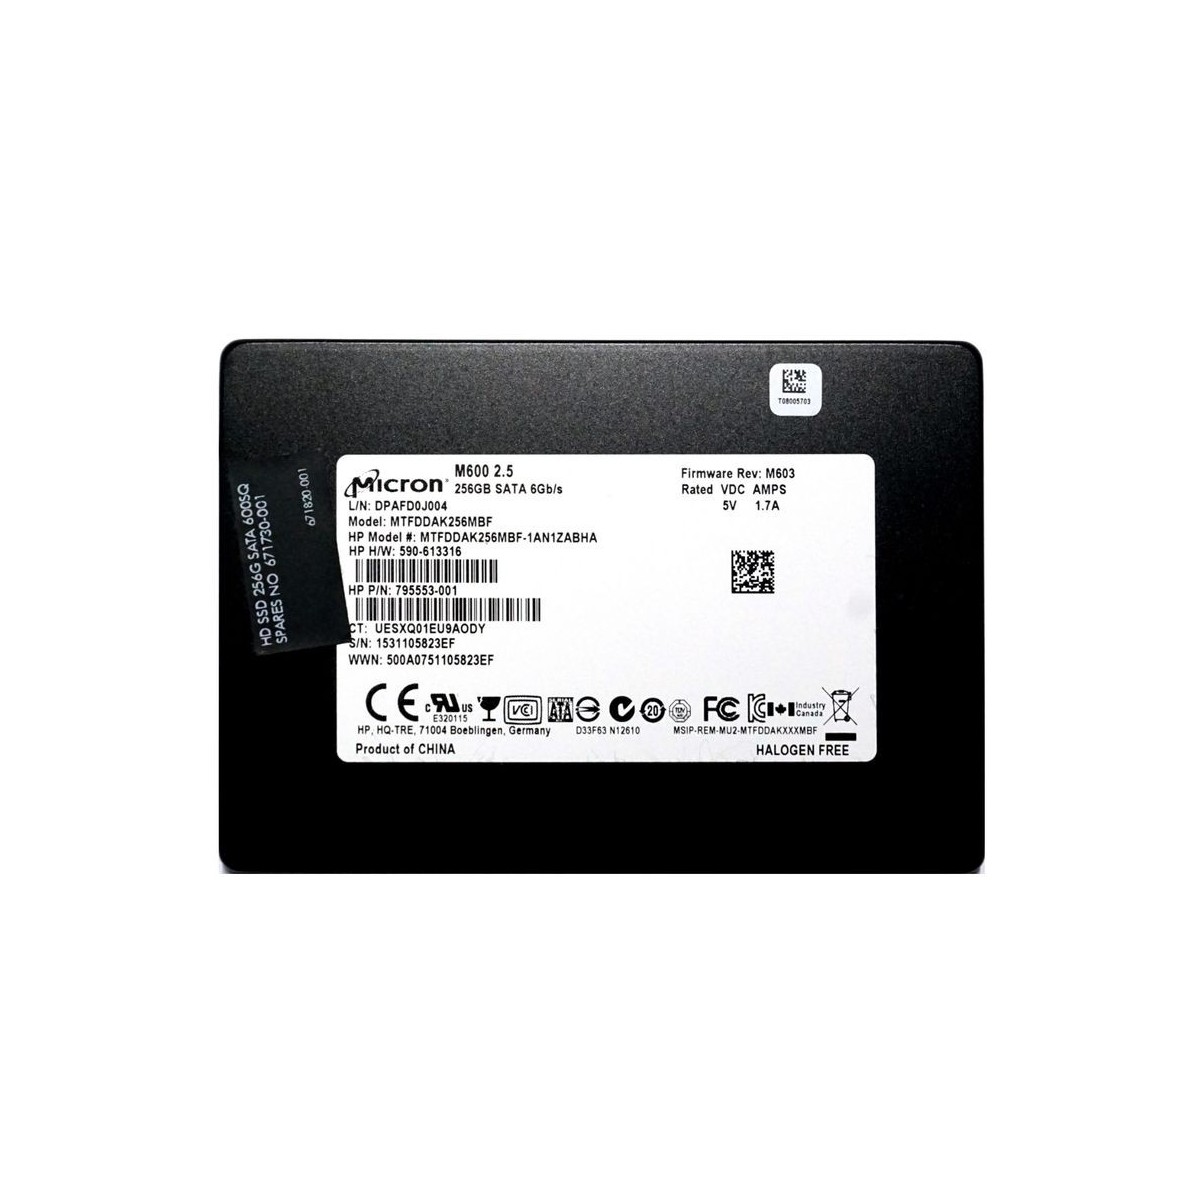 DYSK HP MICRON 256GB SATA SSD 6G 2,5 795553-001